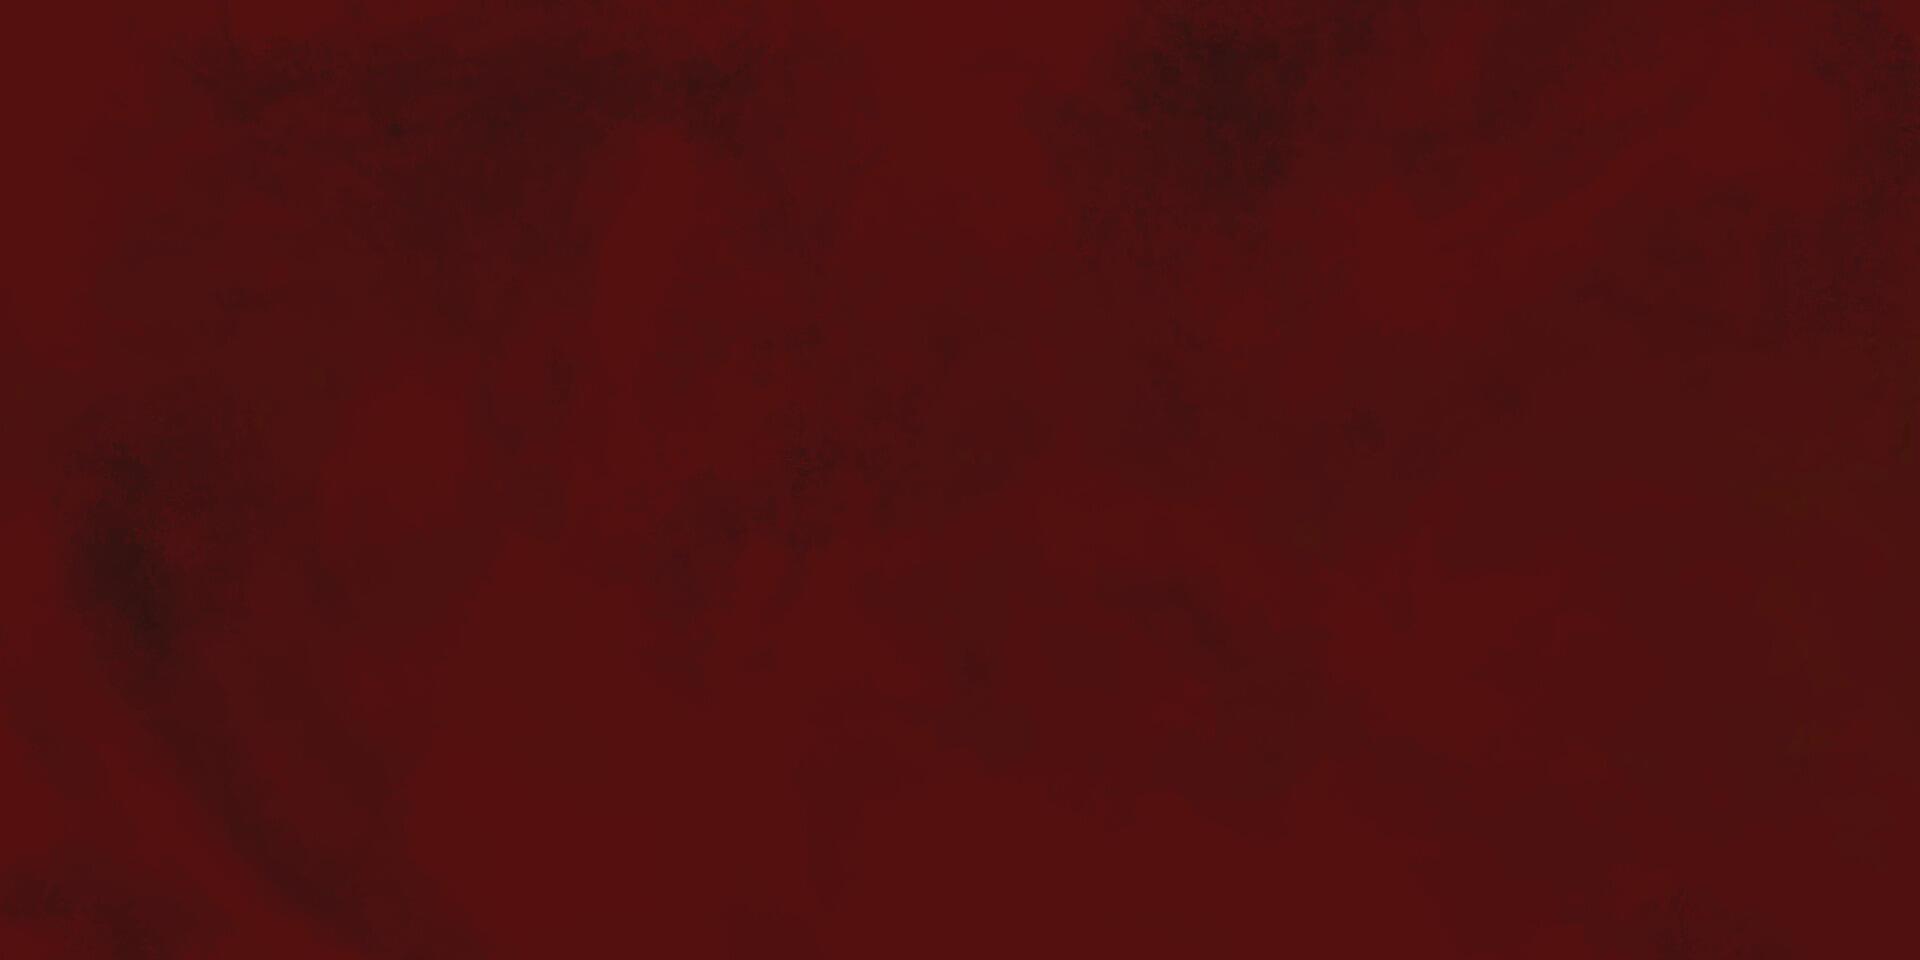 abstrakt Design mit rot Grunge Hintergrund. alt dunkel rot Papier Textur Hintergrund. rot Grunge Textur. dunkel rot Aquarell abstrakt Hintergrund. vektor